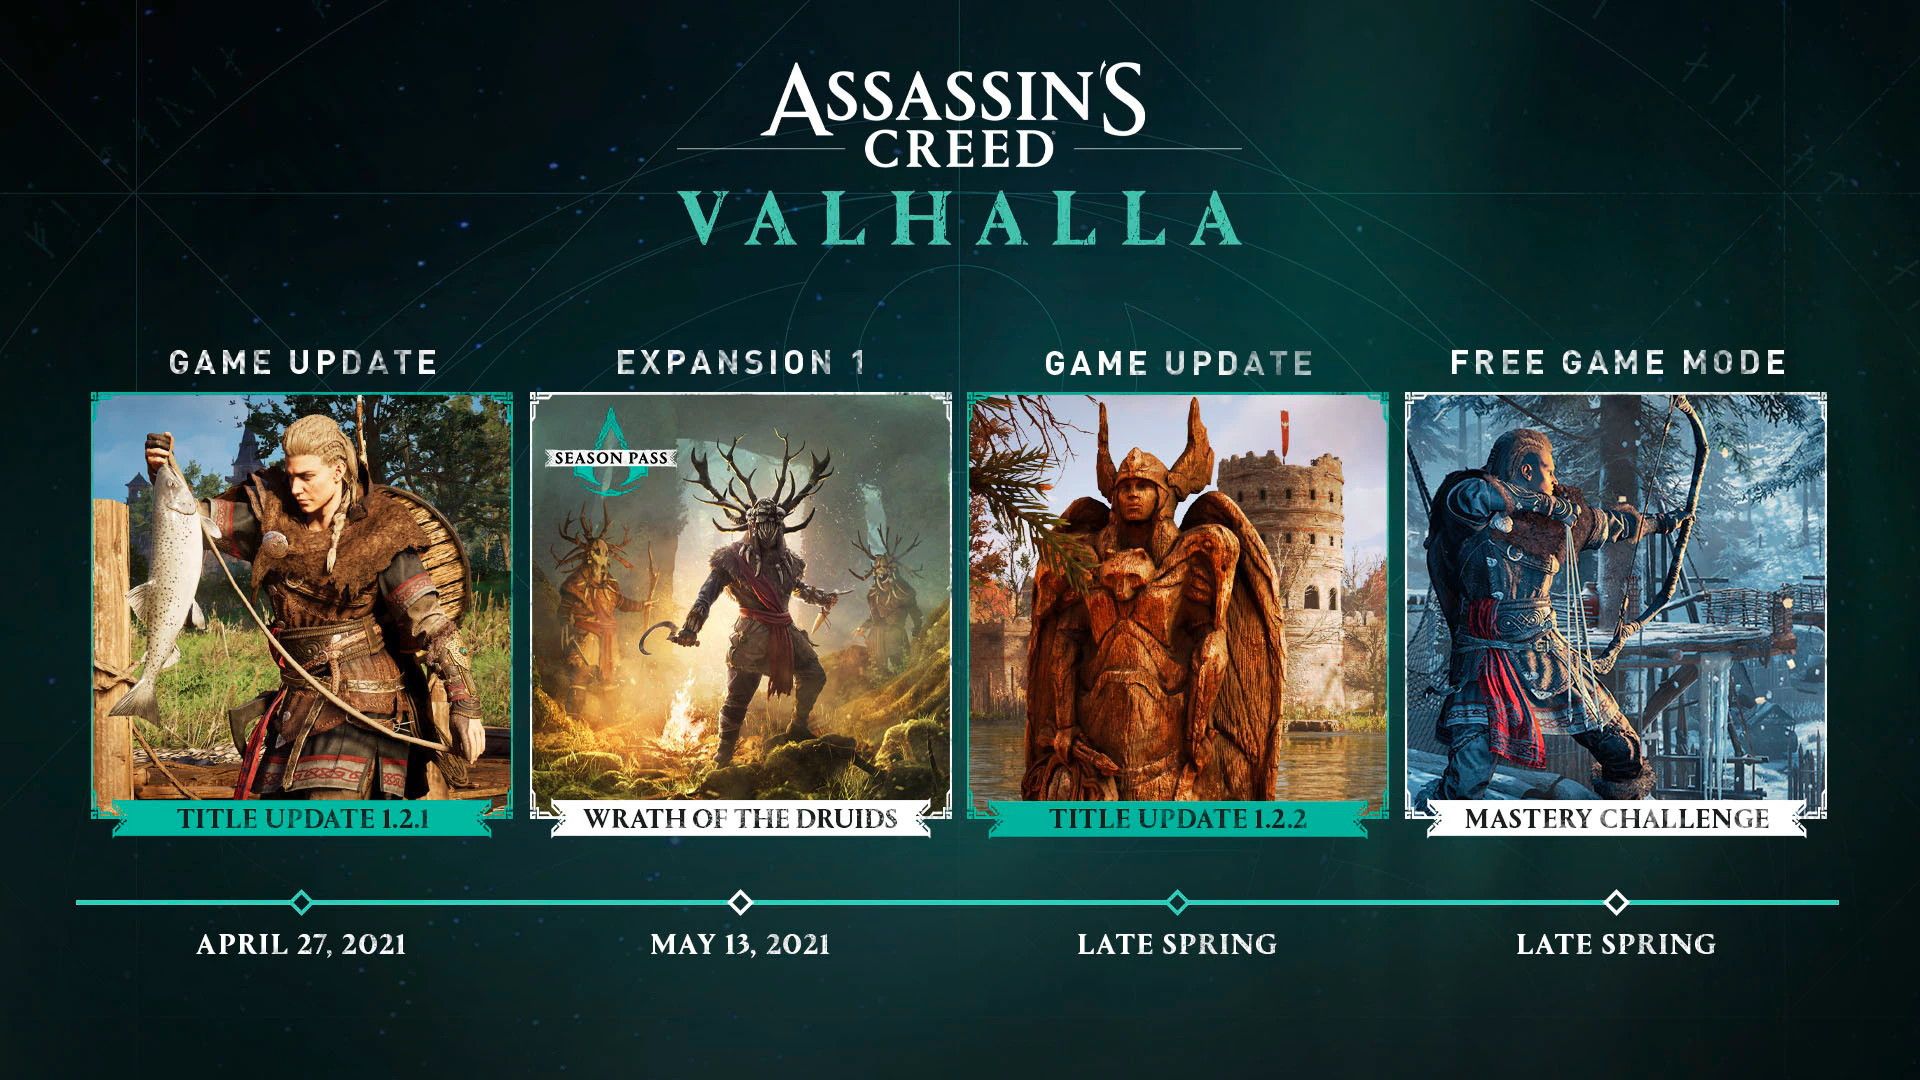 График выхода DLC для Assassin\'s Creed Valhalla.
Источник: Ubisoft